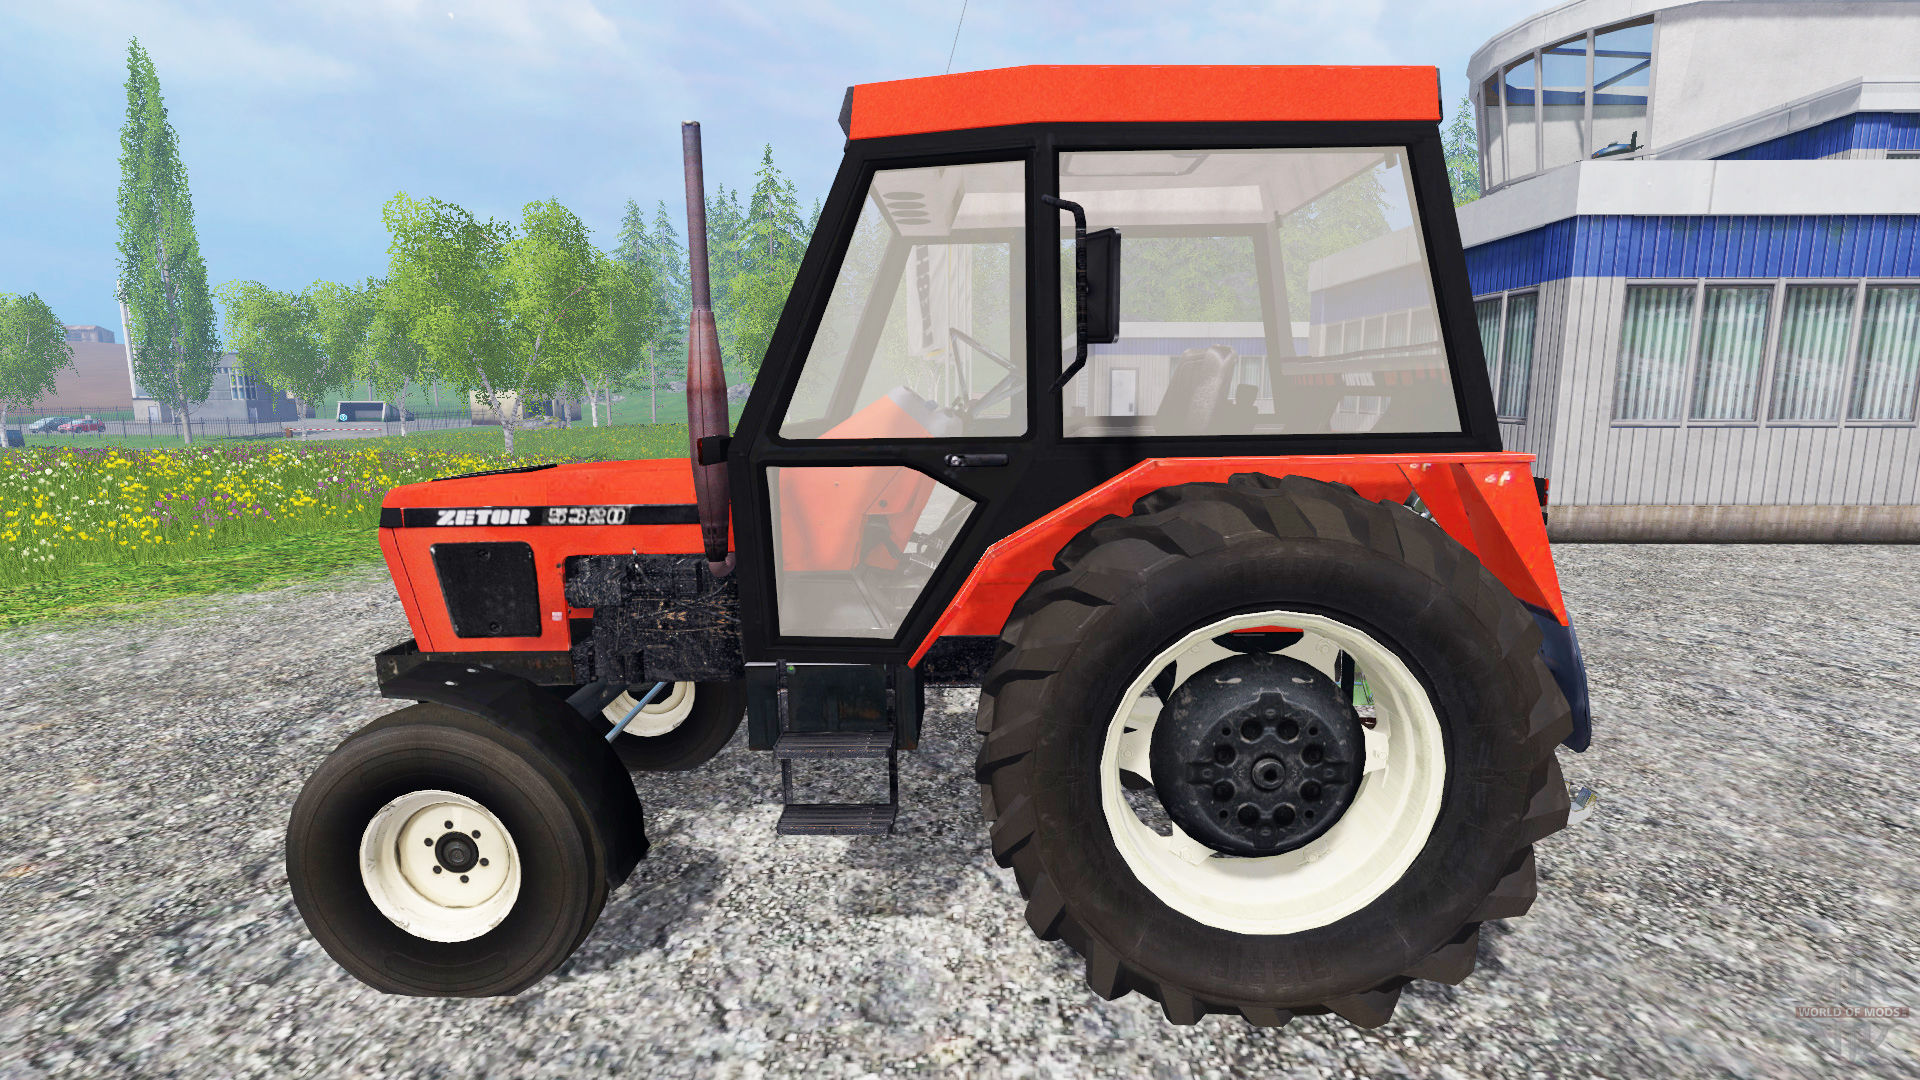 Zetor 5320 for Farming Simulator 2015